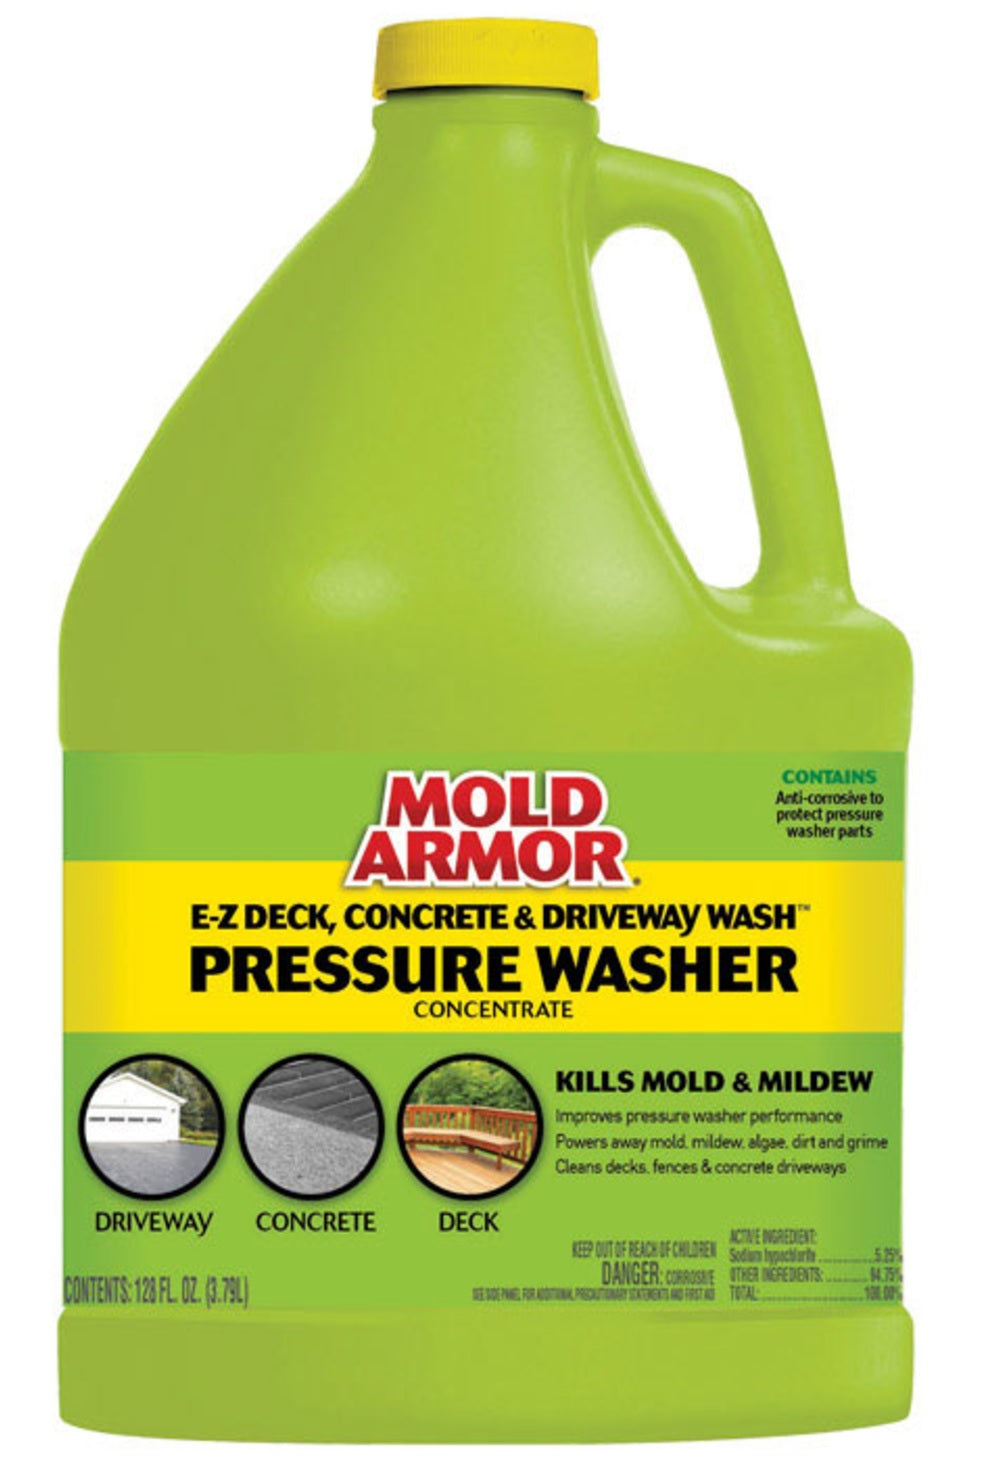 Mold Armor FG582 E-Z Deck, Concrete & Driveway Wash Pressure Washer, 128 Oz